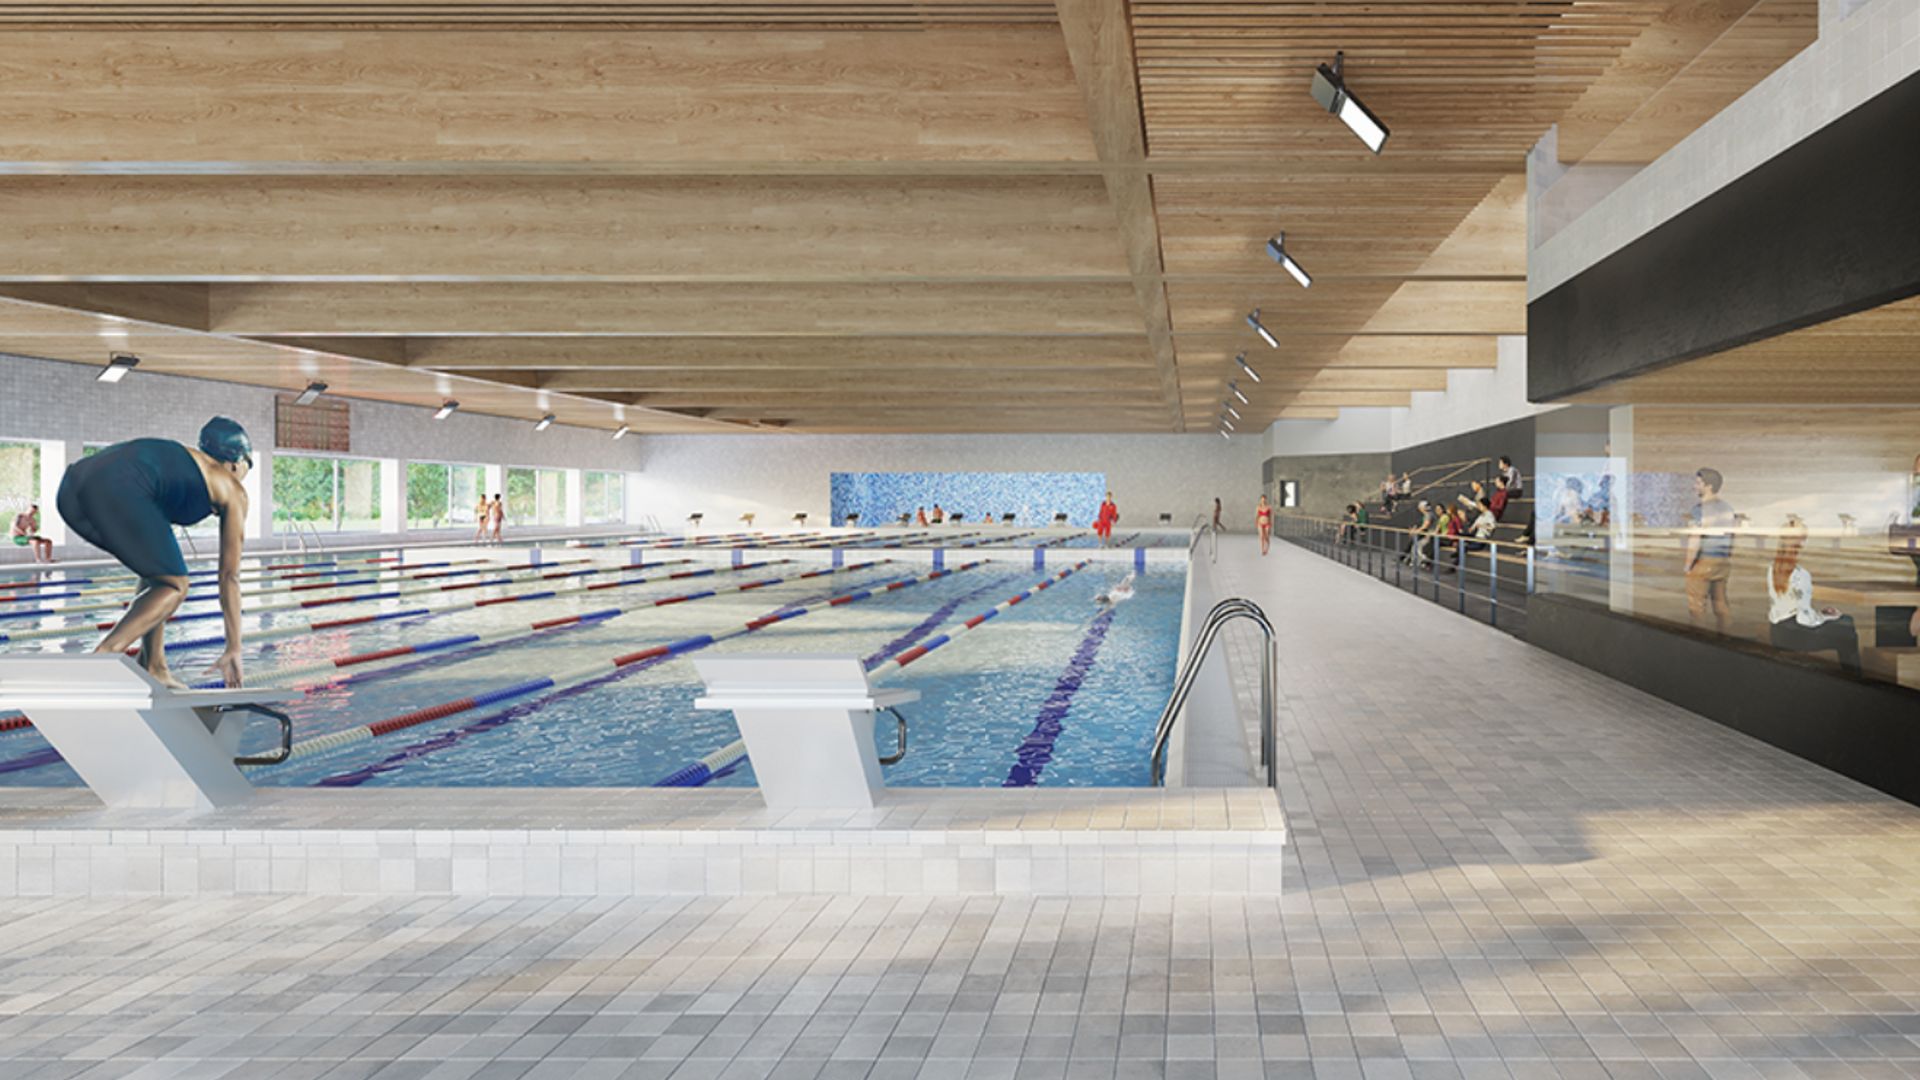 La future piscine de LLN aura les dimensions d'un bassin olympique et sera ouverte à tous les publics: sportifs, étudiants, familles, seniors.